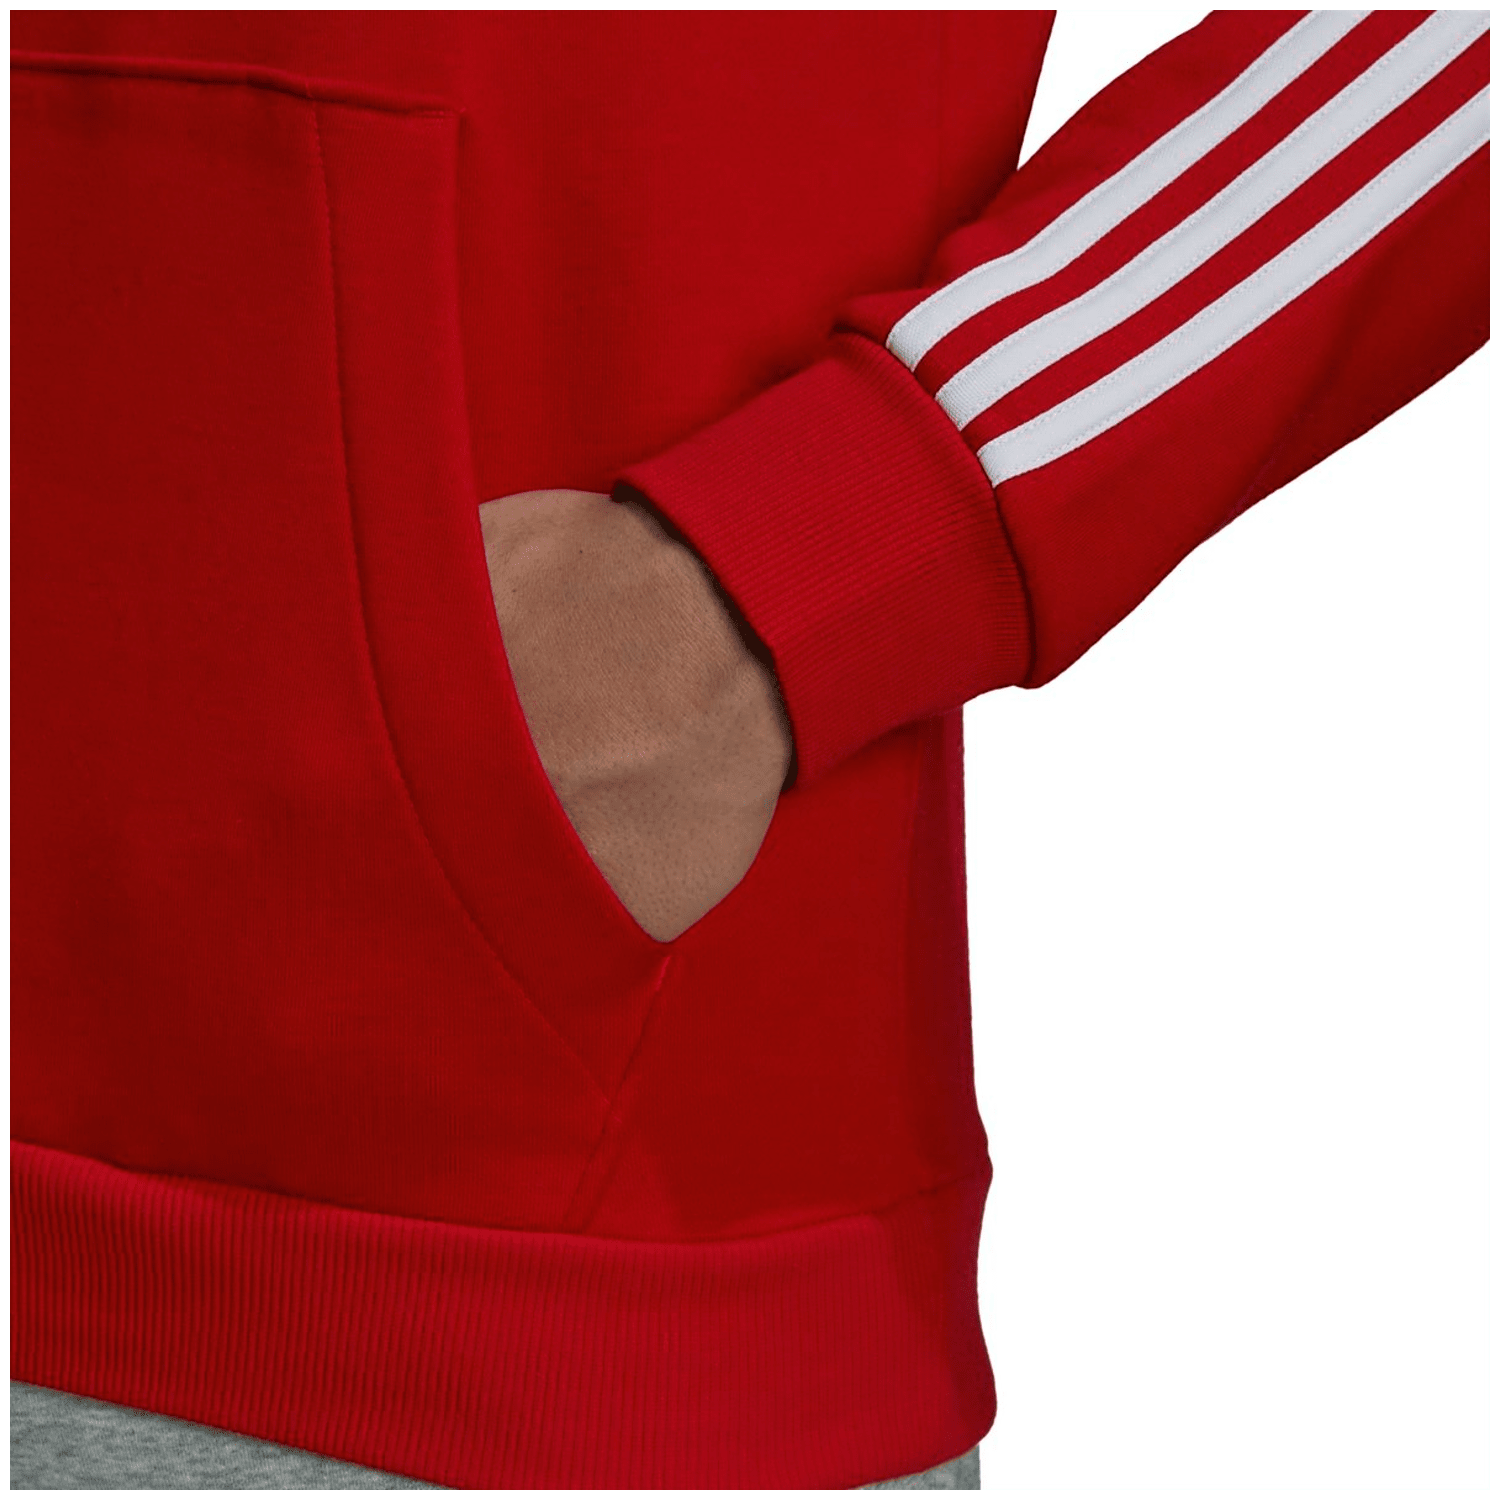 Adidas Essentials Fleece 3-Streifen Hoodie Herren Fleecejacke